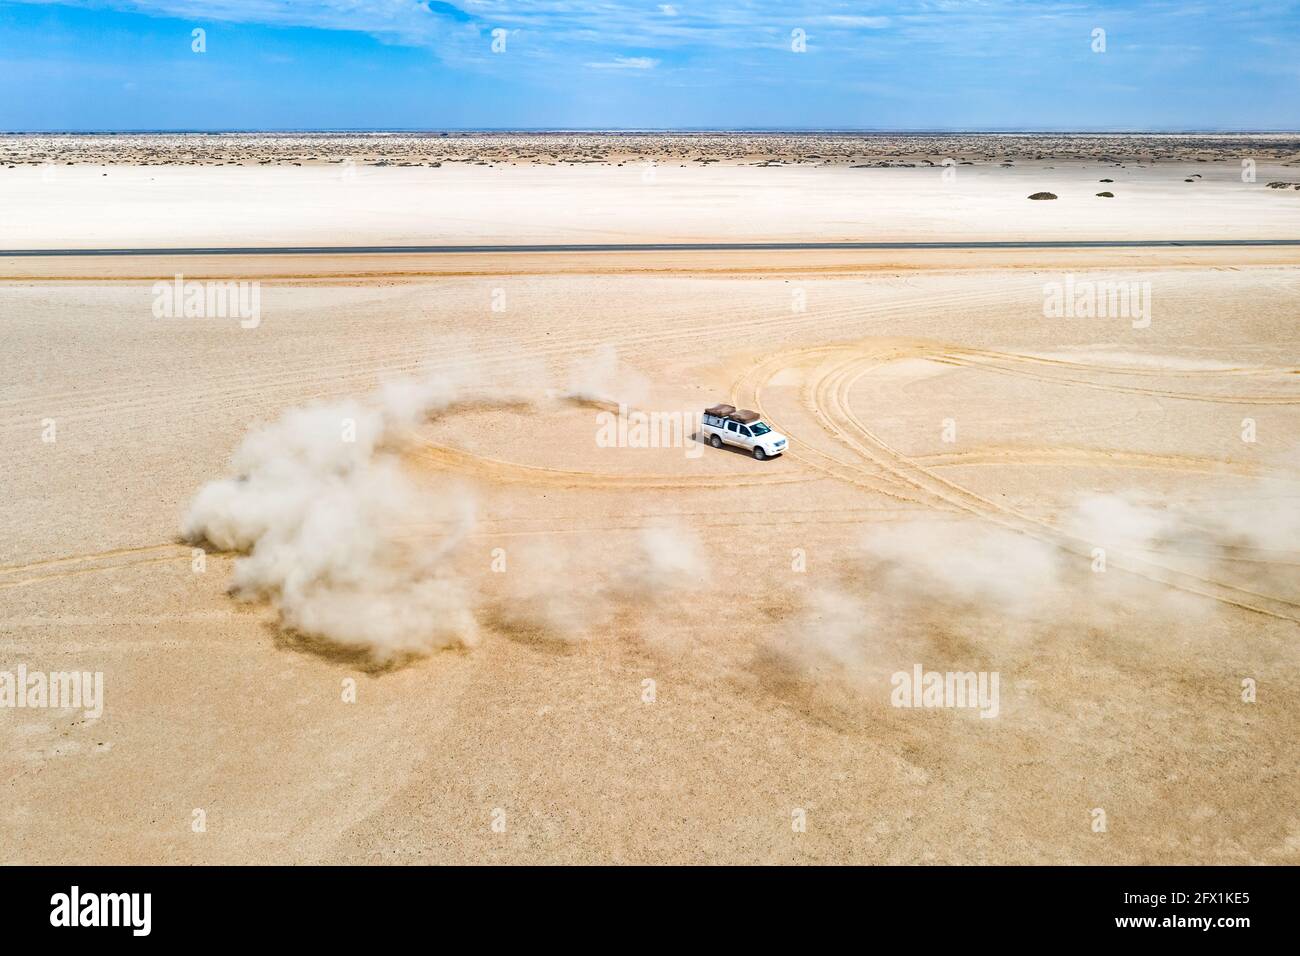 Una vista del paisaje que muestra una duna blanca de un todoterreno que se extiende por el desierto, enviando arena al aire. Namibia, África. Fotografía aérea de aviones teledirigidos Foto de stock